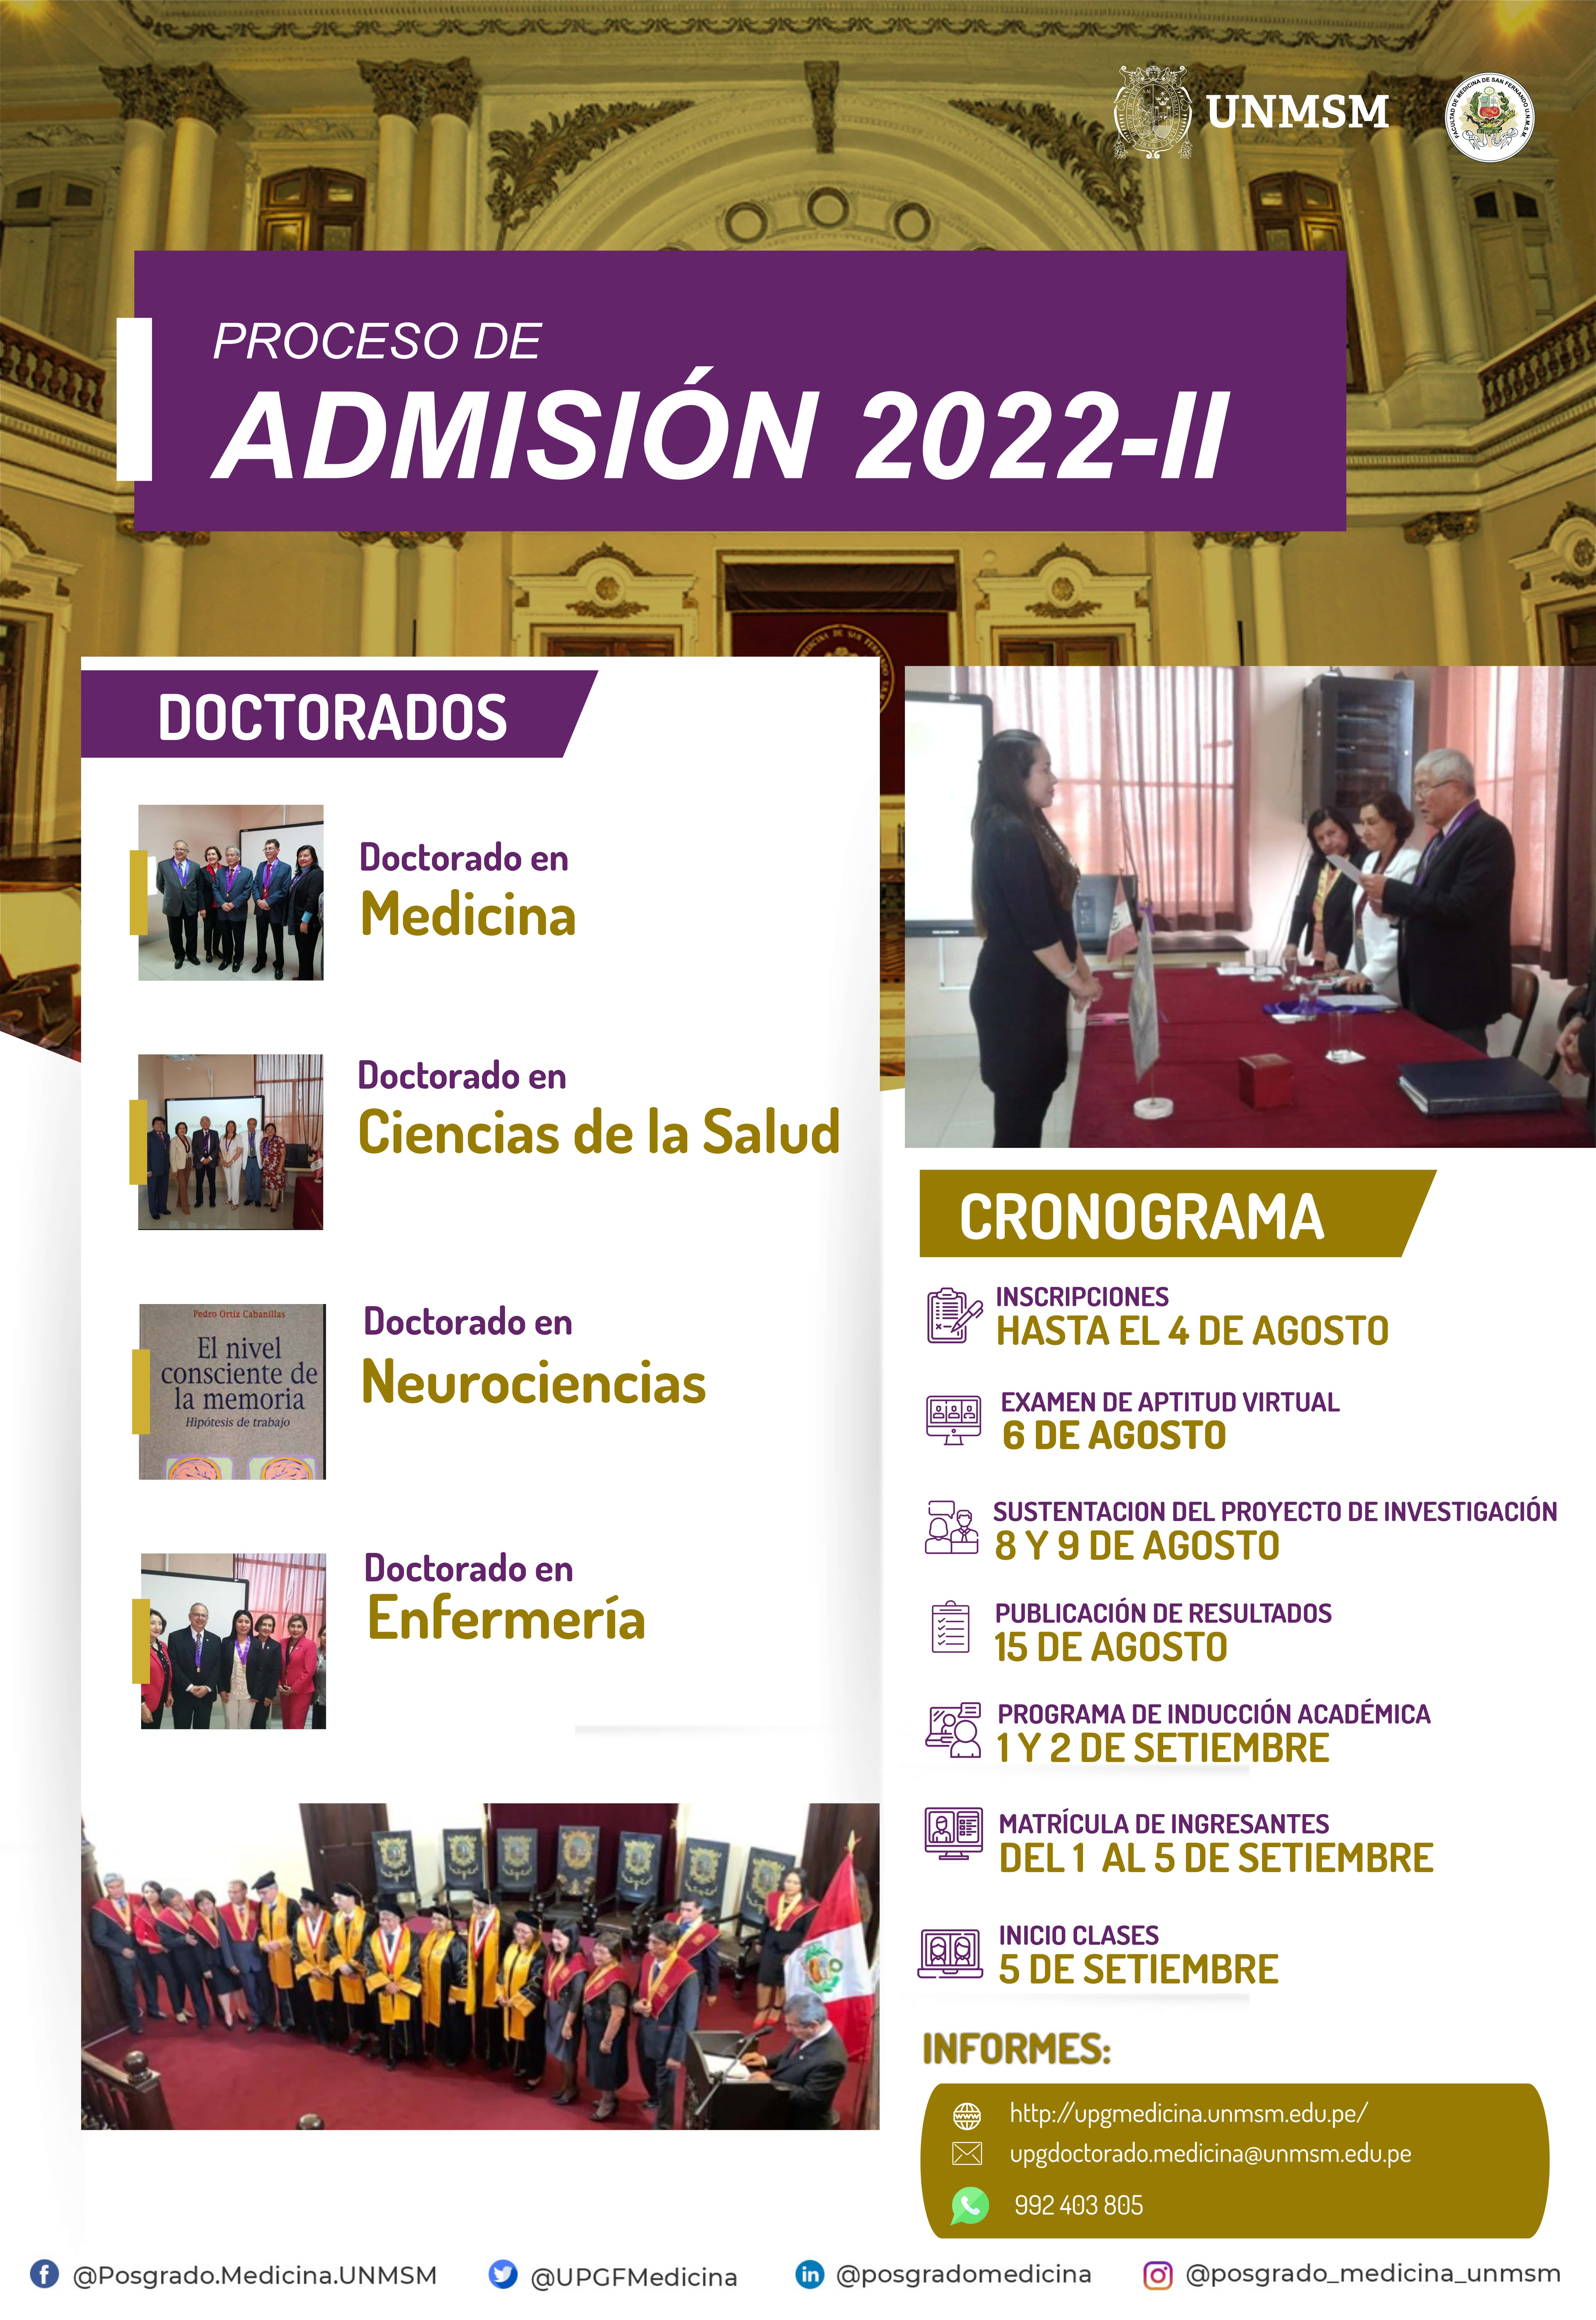 Proceso de Admisión Doctorados 2022-II